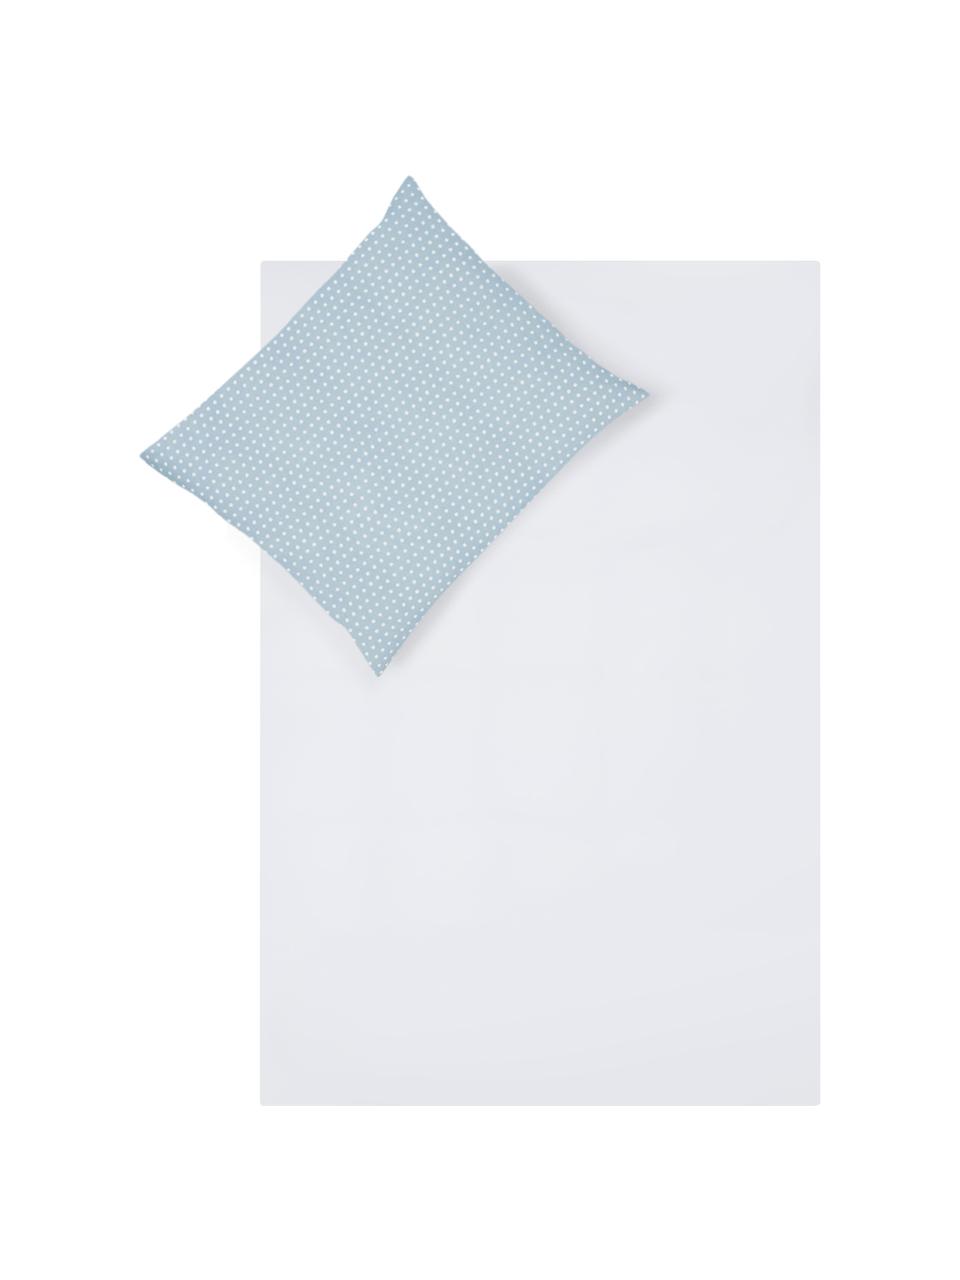 Dubbelzijdig dekbedovertrek Perun, Katoen, Bovenzijde: lichtblauw. Onderzijde: wit, 140 x 200 cm